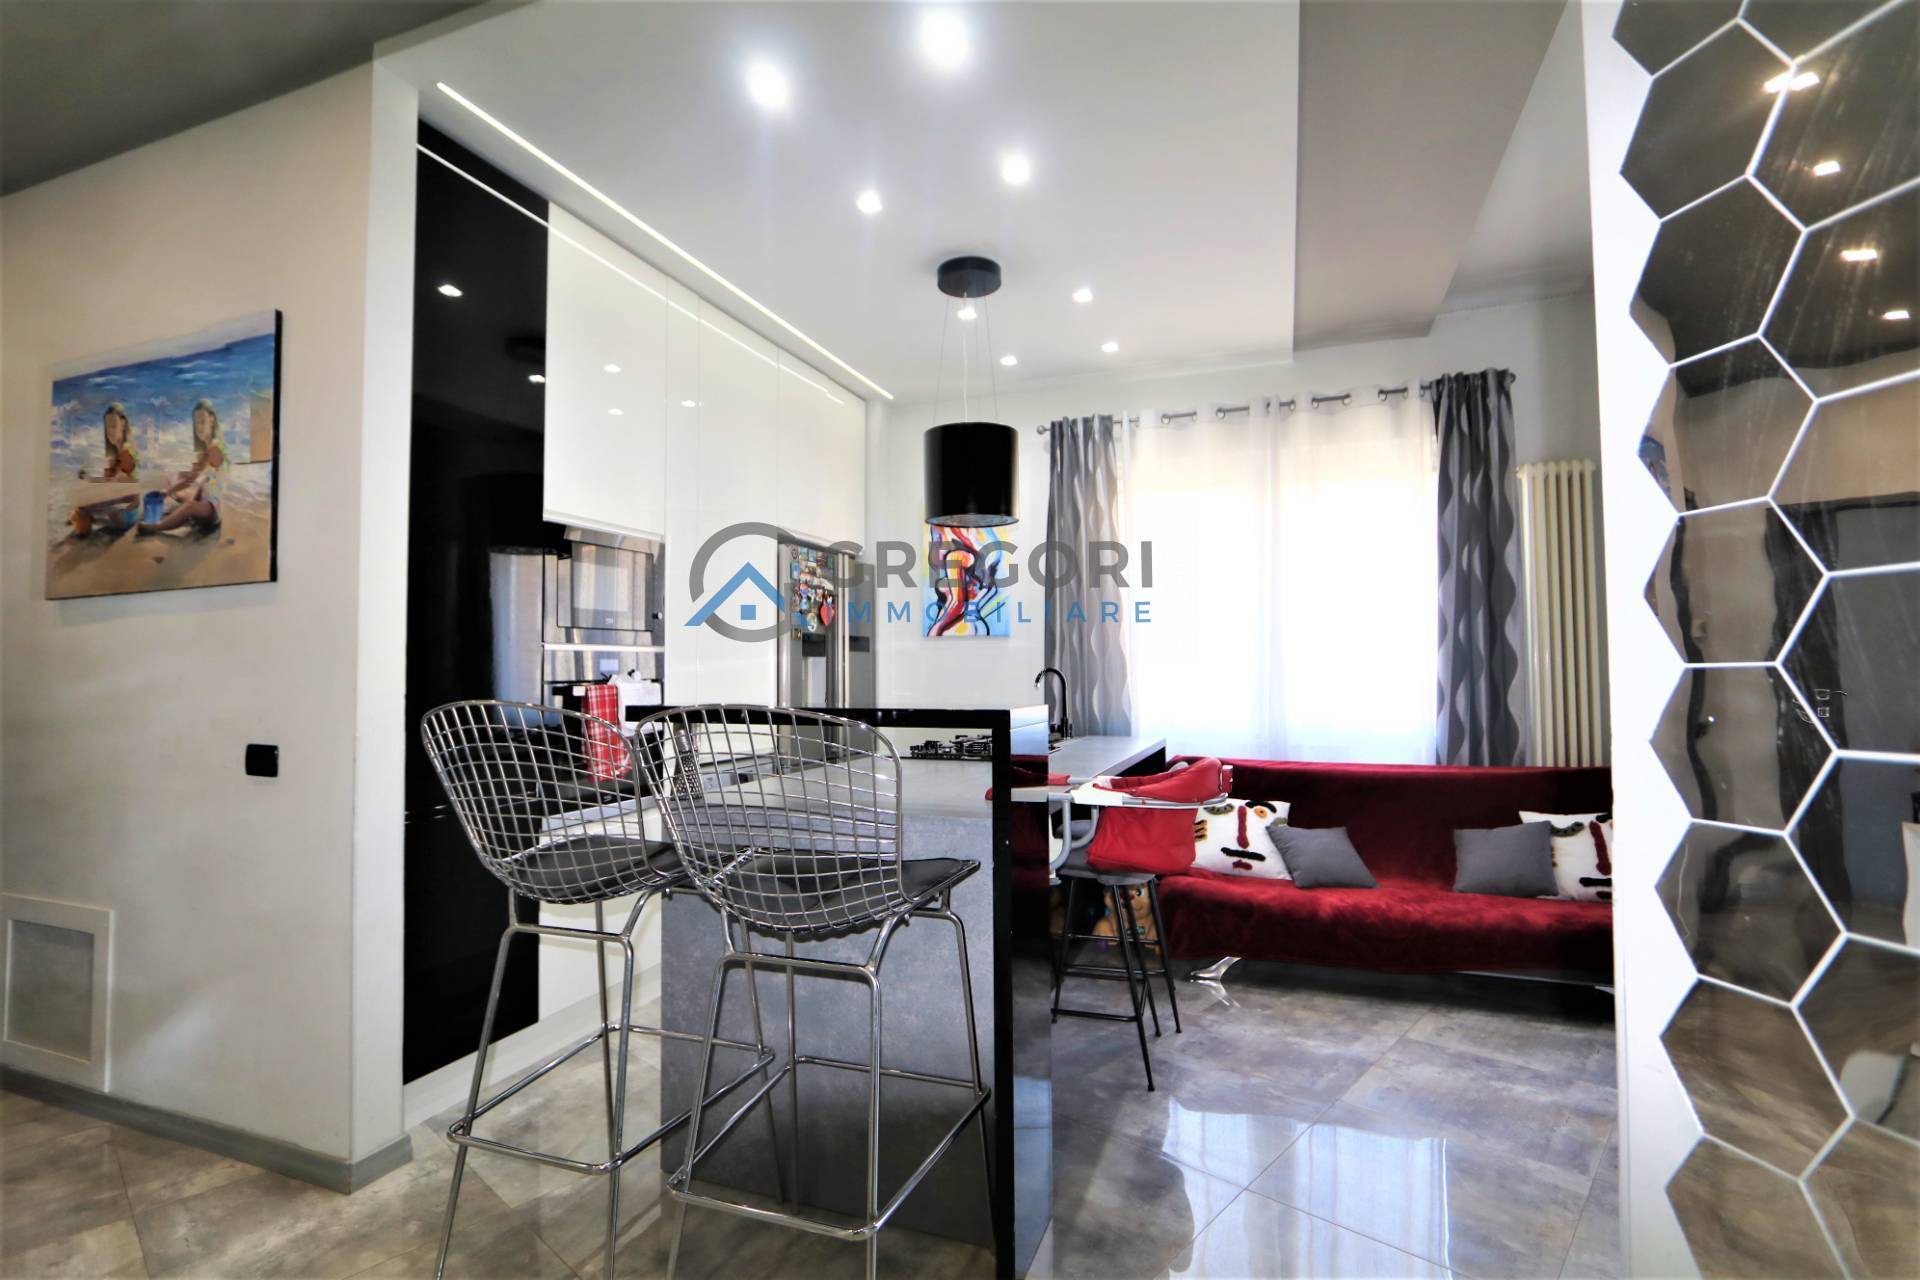 Appartamento in vendita a Nereto, 3 locali, prezzo € 90.000 | PortaleAgenzieImmobiliari.it